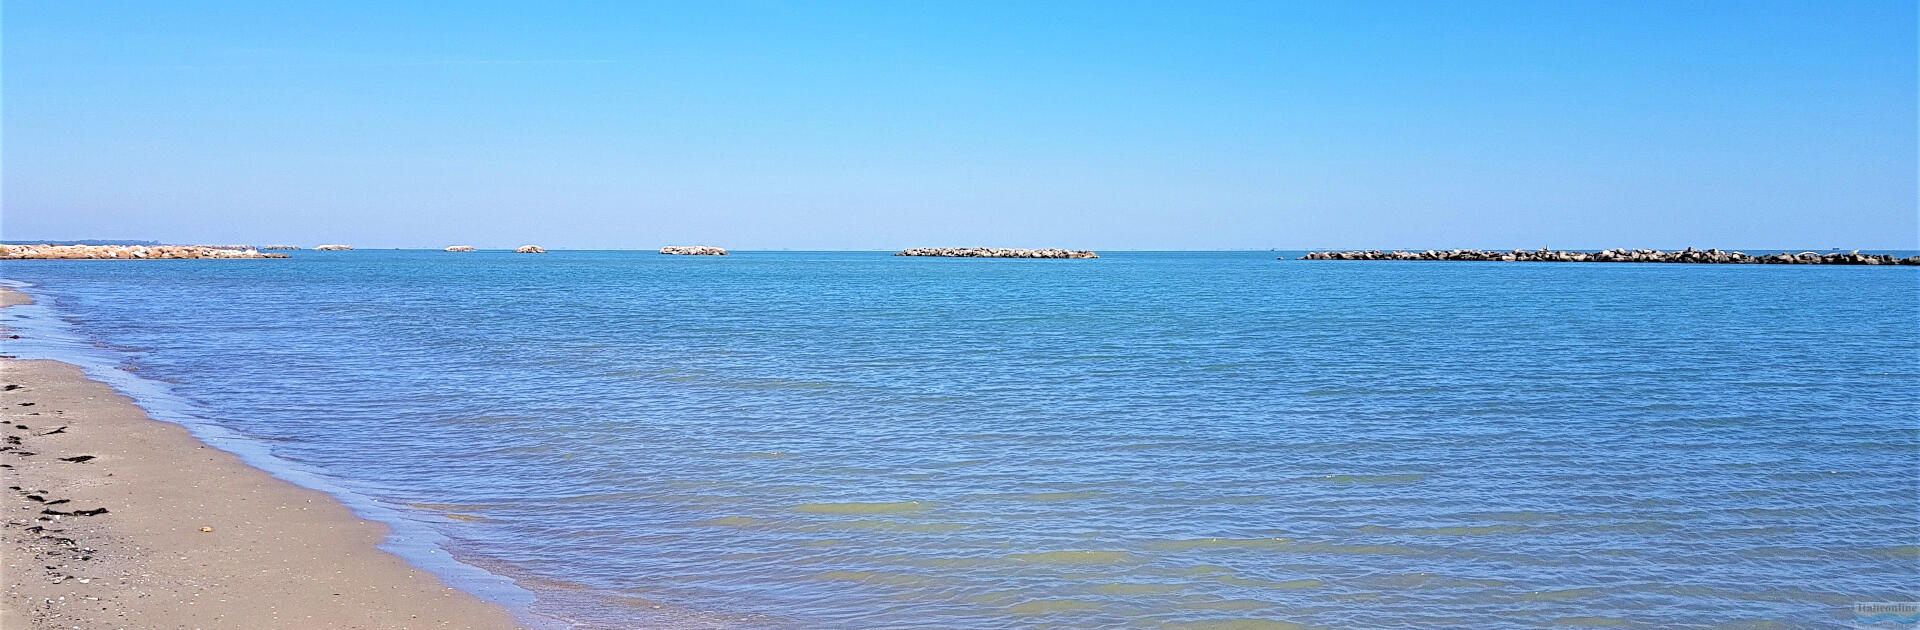 Ascea Marina